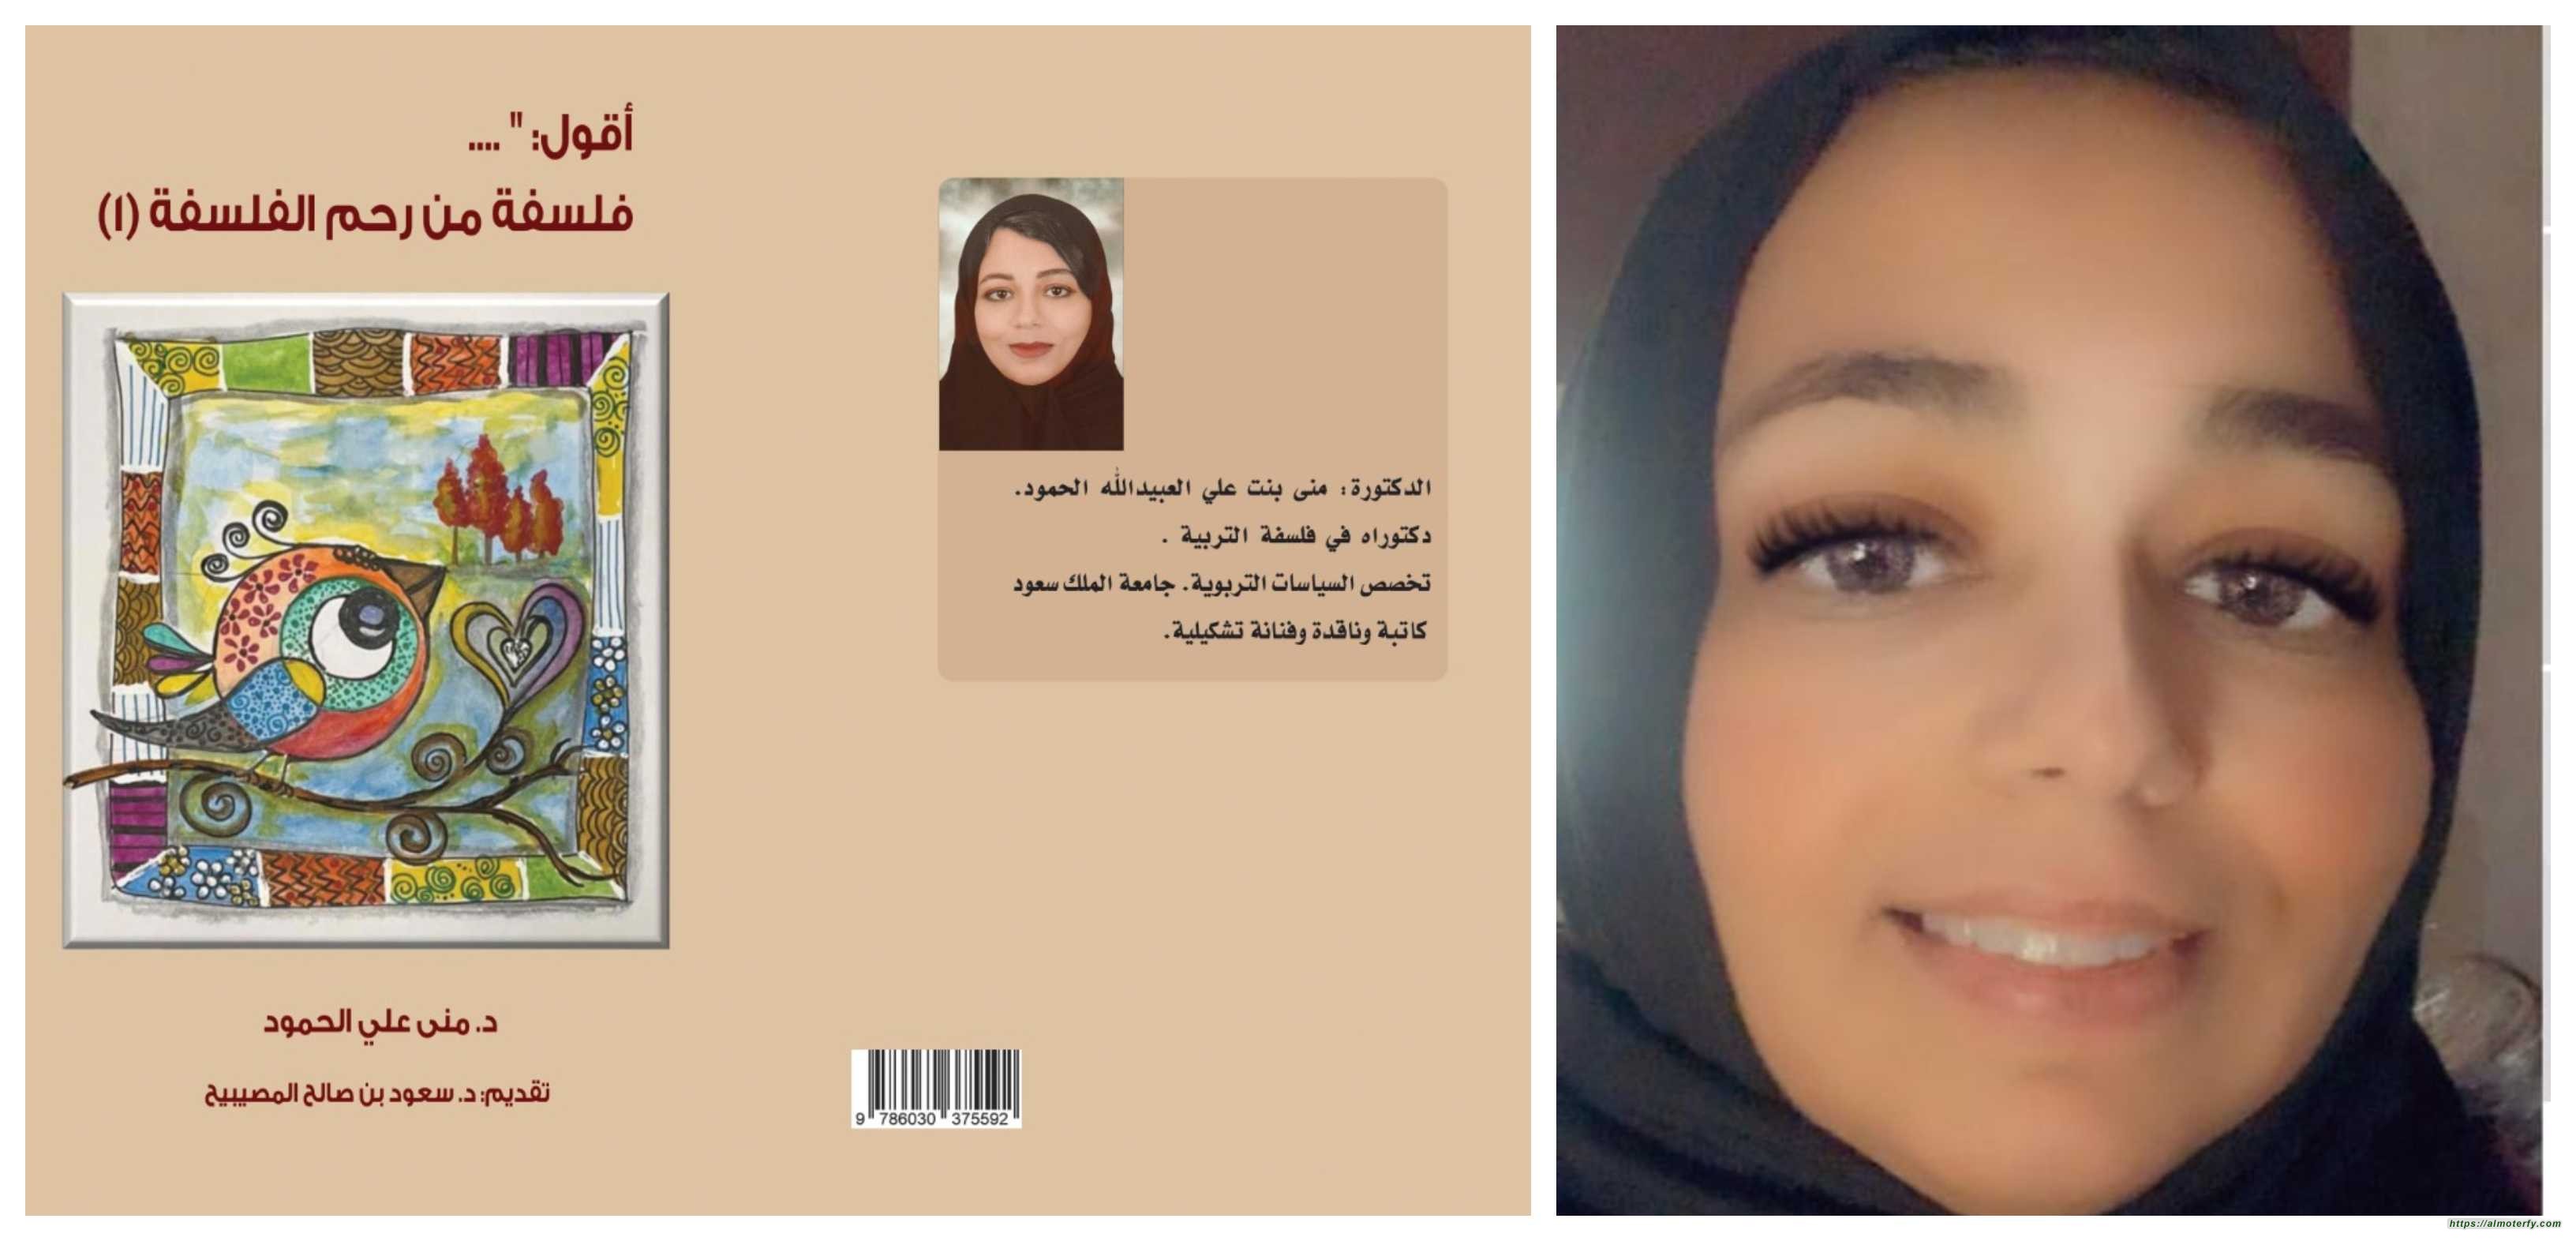 صدر للدكتورة التربوية الفنانة منى بنت علي الحمود:  فلسفة من رحم الفلسفة كتاب جديد بثوب قشيب جميل